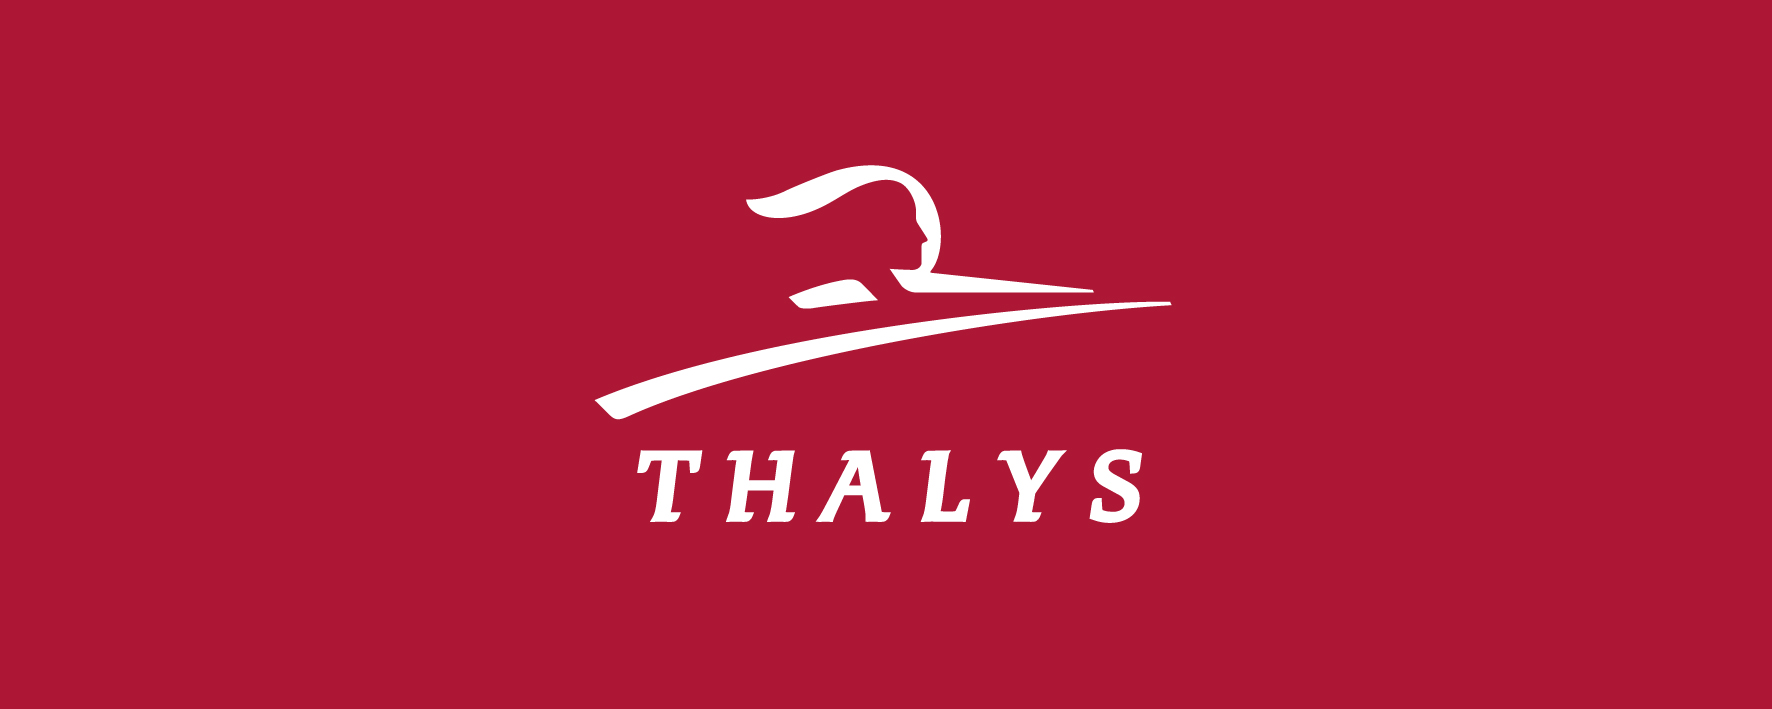 Réseau européen Thalys